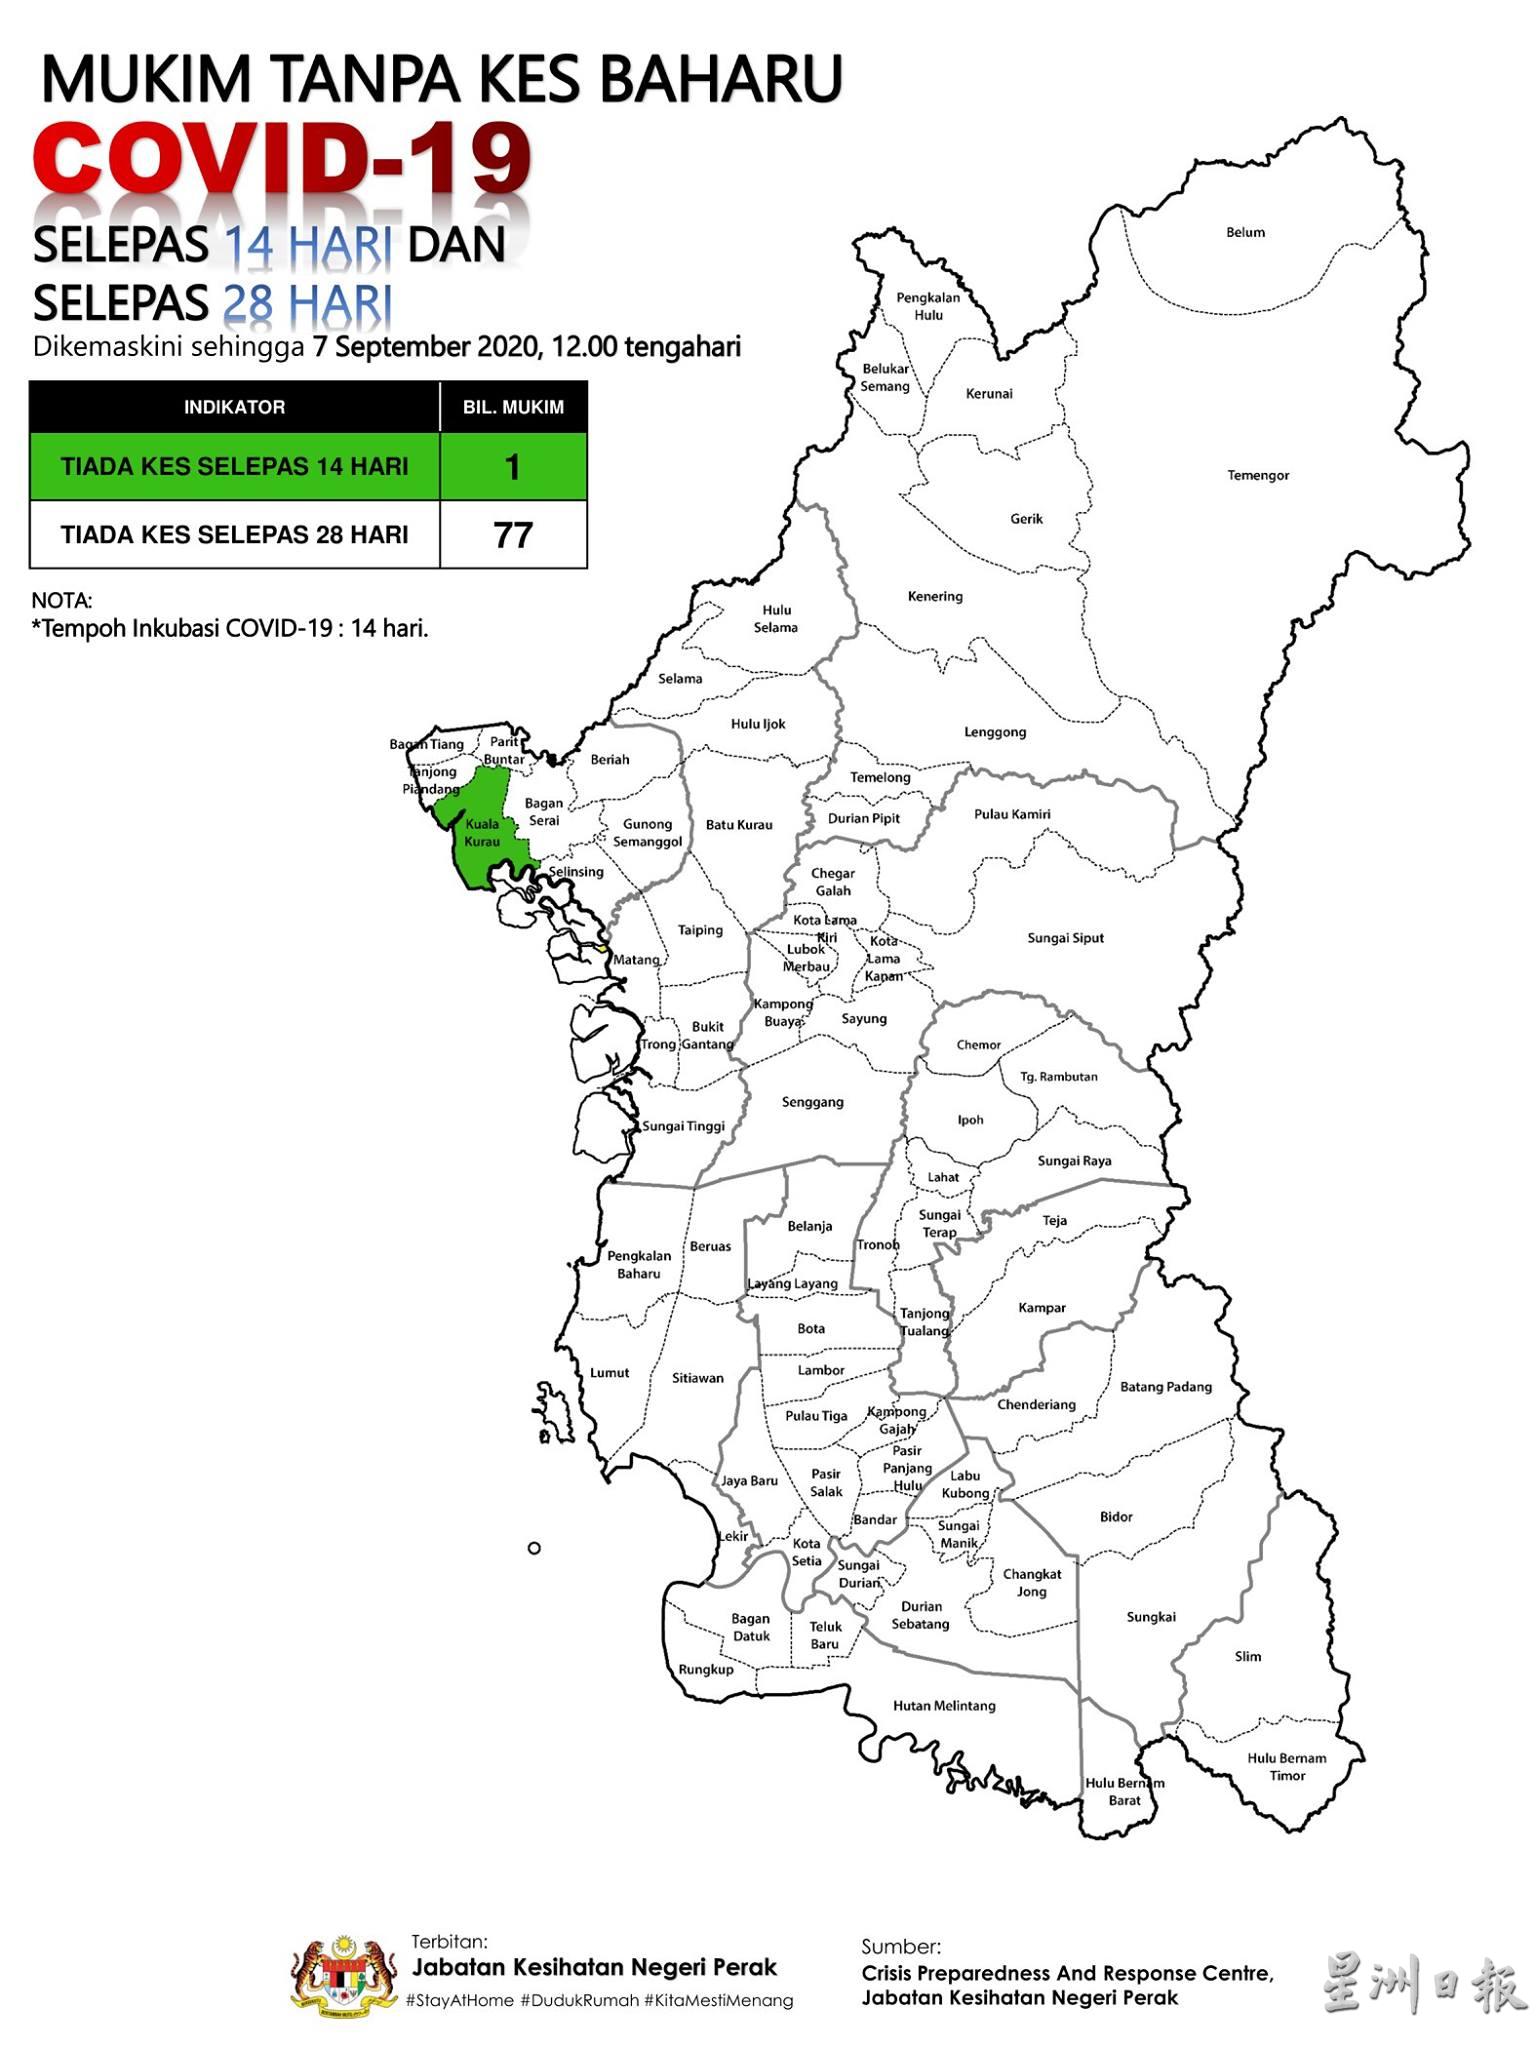 目前霹州仅剩瓜拉古楼为“冠病绿区”，即是在过去14天没有出现冠病确诊病例。

